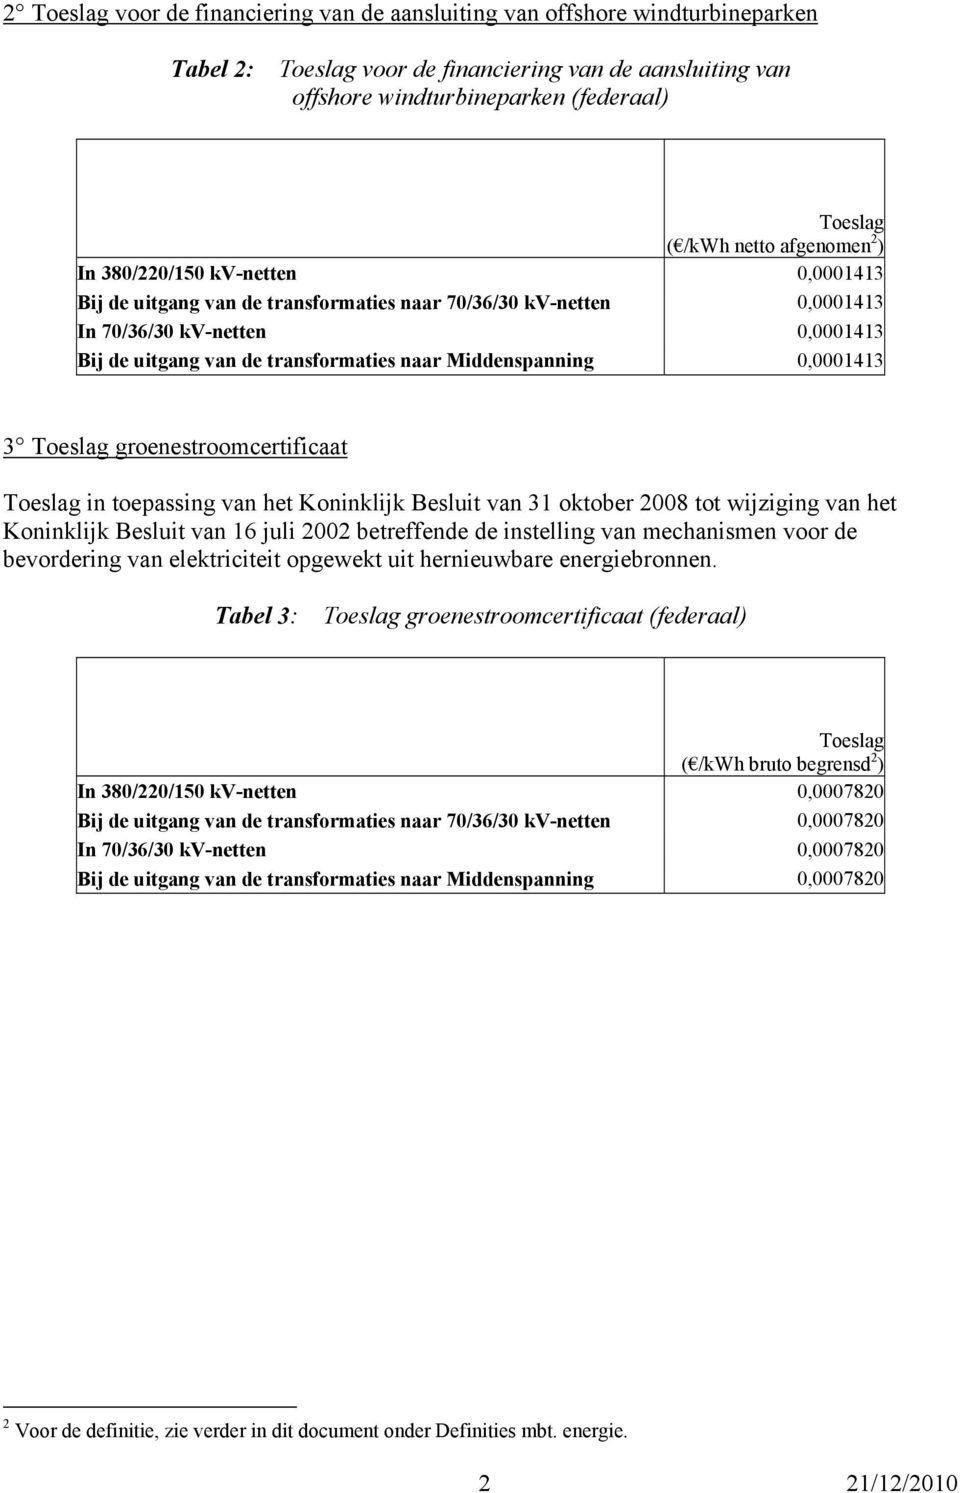 0,0001413 3 groenestroomcertificaat in toepassing van het Koninklijk Besluit van 31 oktober 2008 tot wijziging van het Koninklijk Besluit van 16 juli 2002 betreffende de instelling van mechanismen